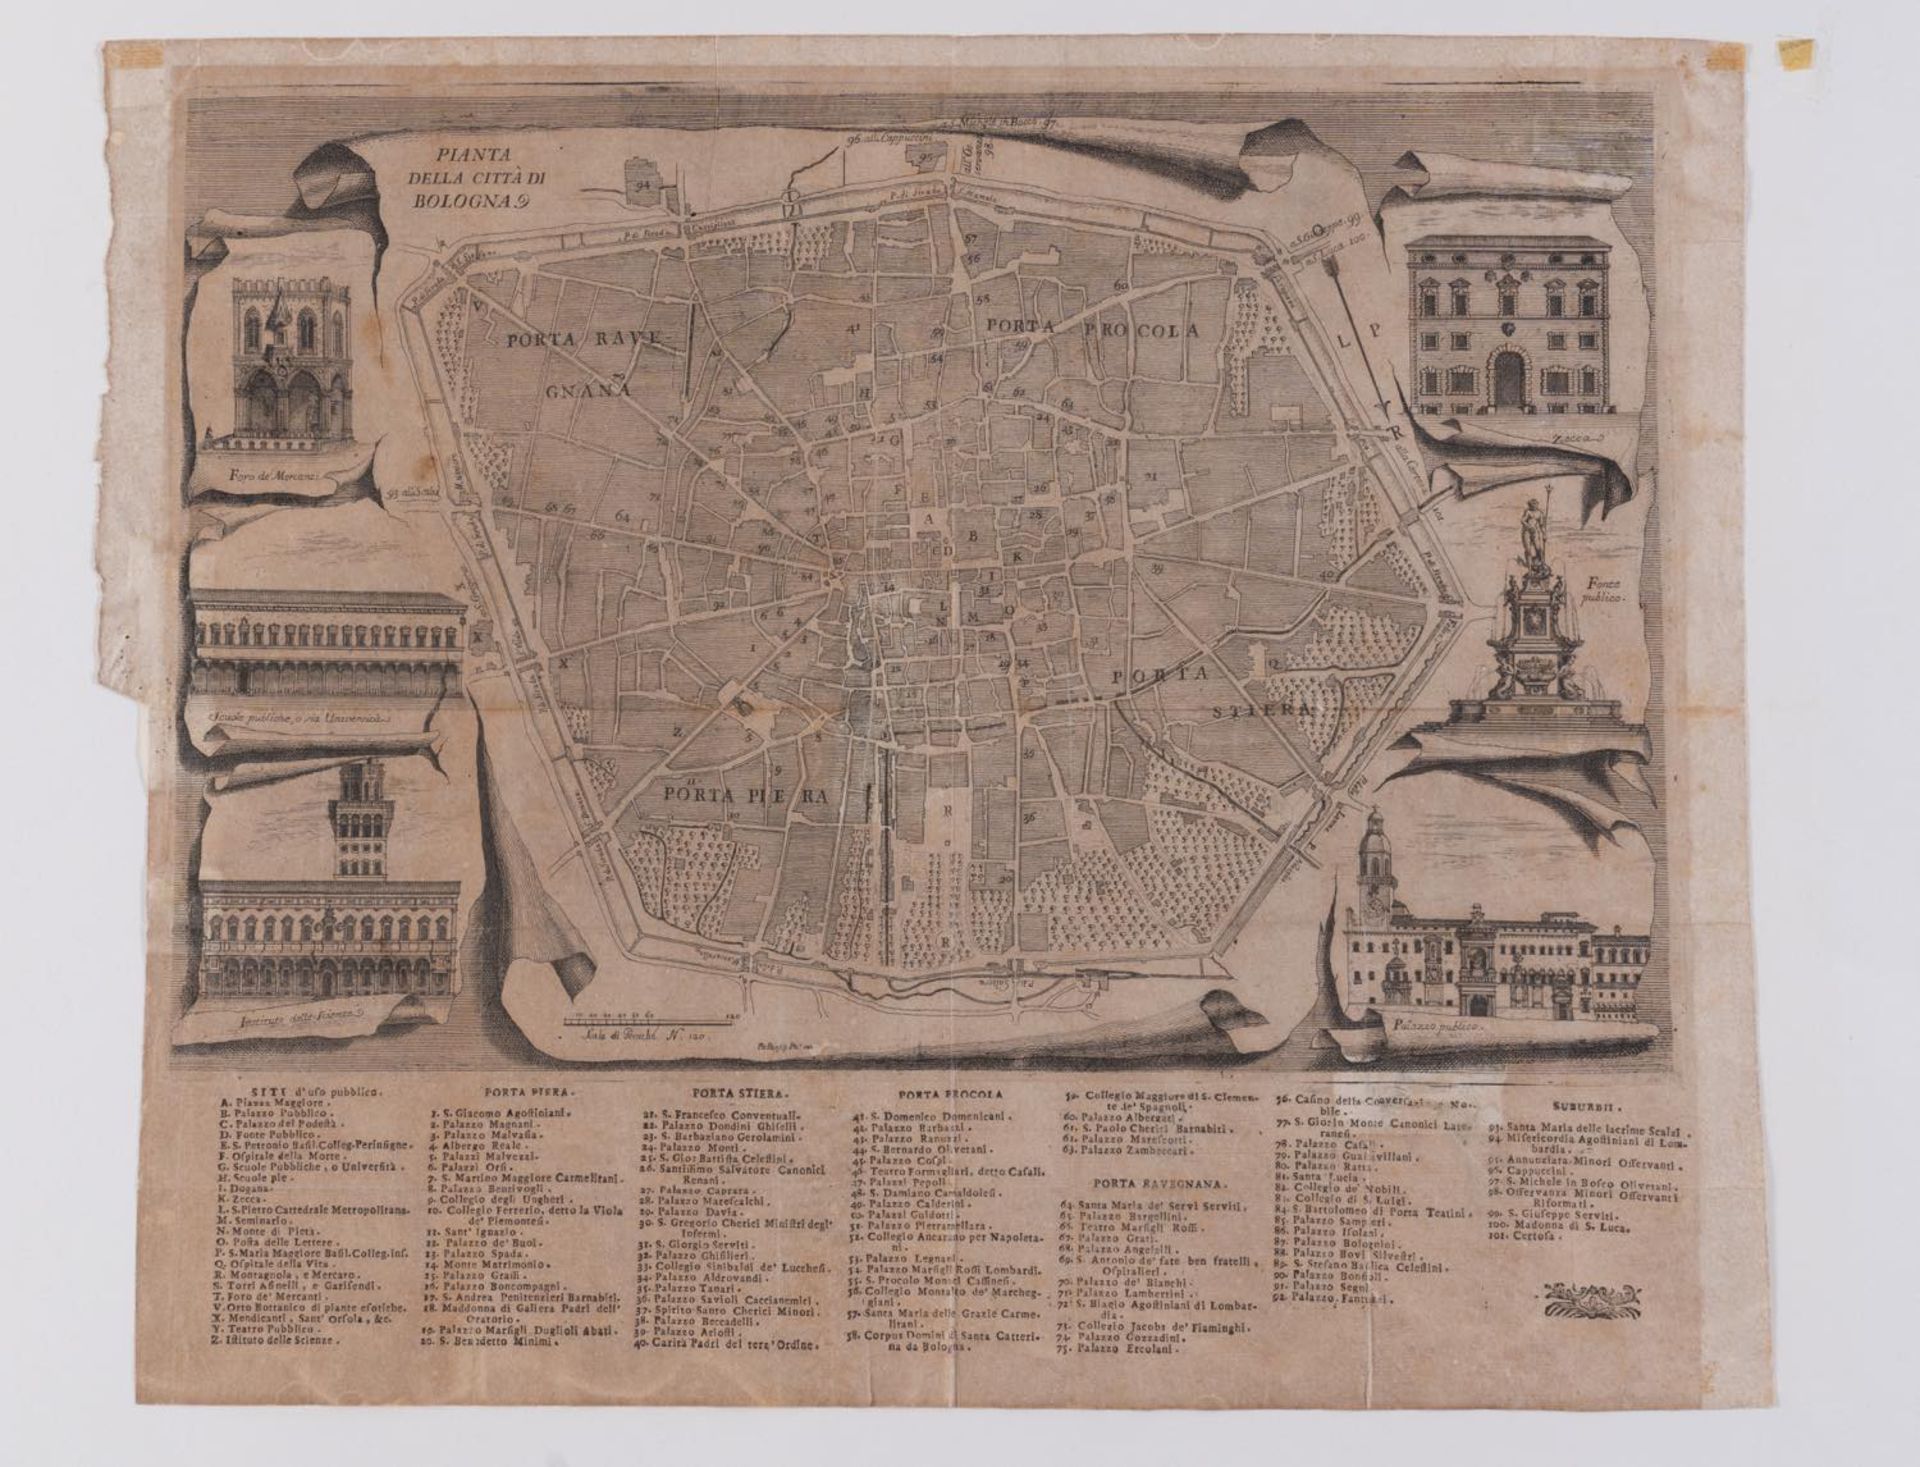 Pio Panfili (Porto San Giorgio 1723 - Bologna 1812), “Pianta della città di Bologna”.